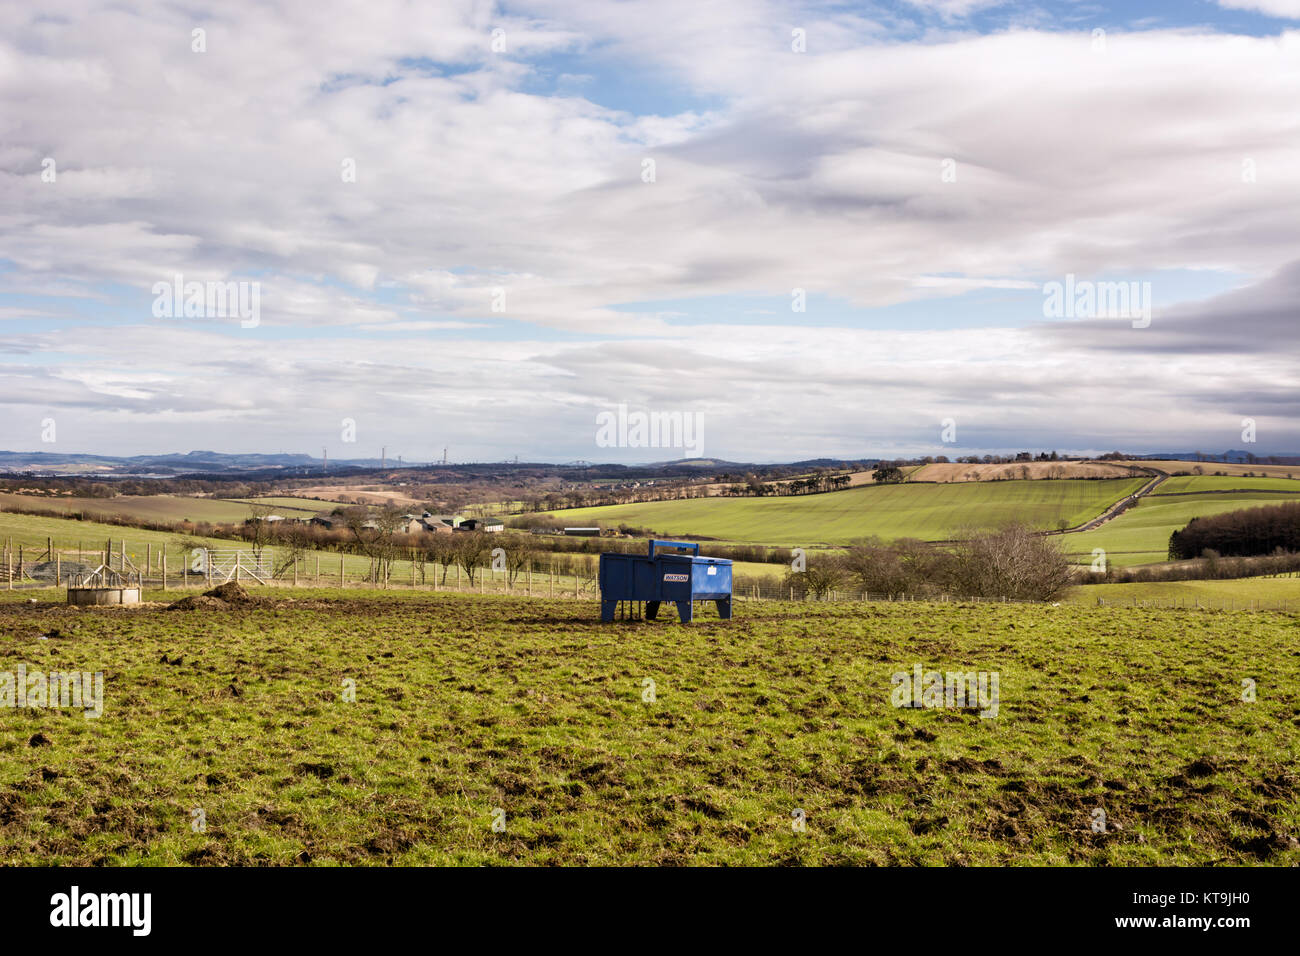 Bull beef feeder on a farmland in West Lothian, Scotland Stock Photo